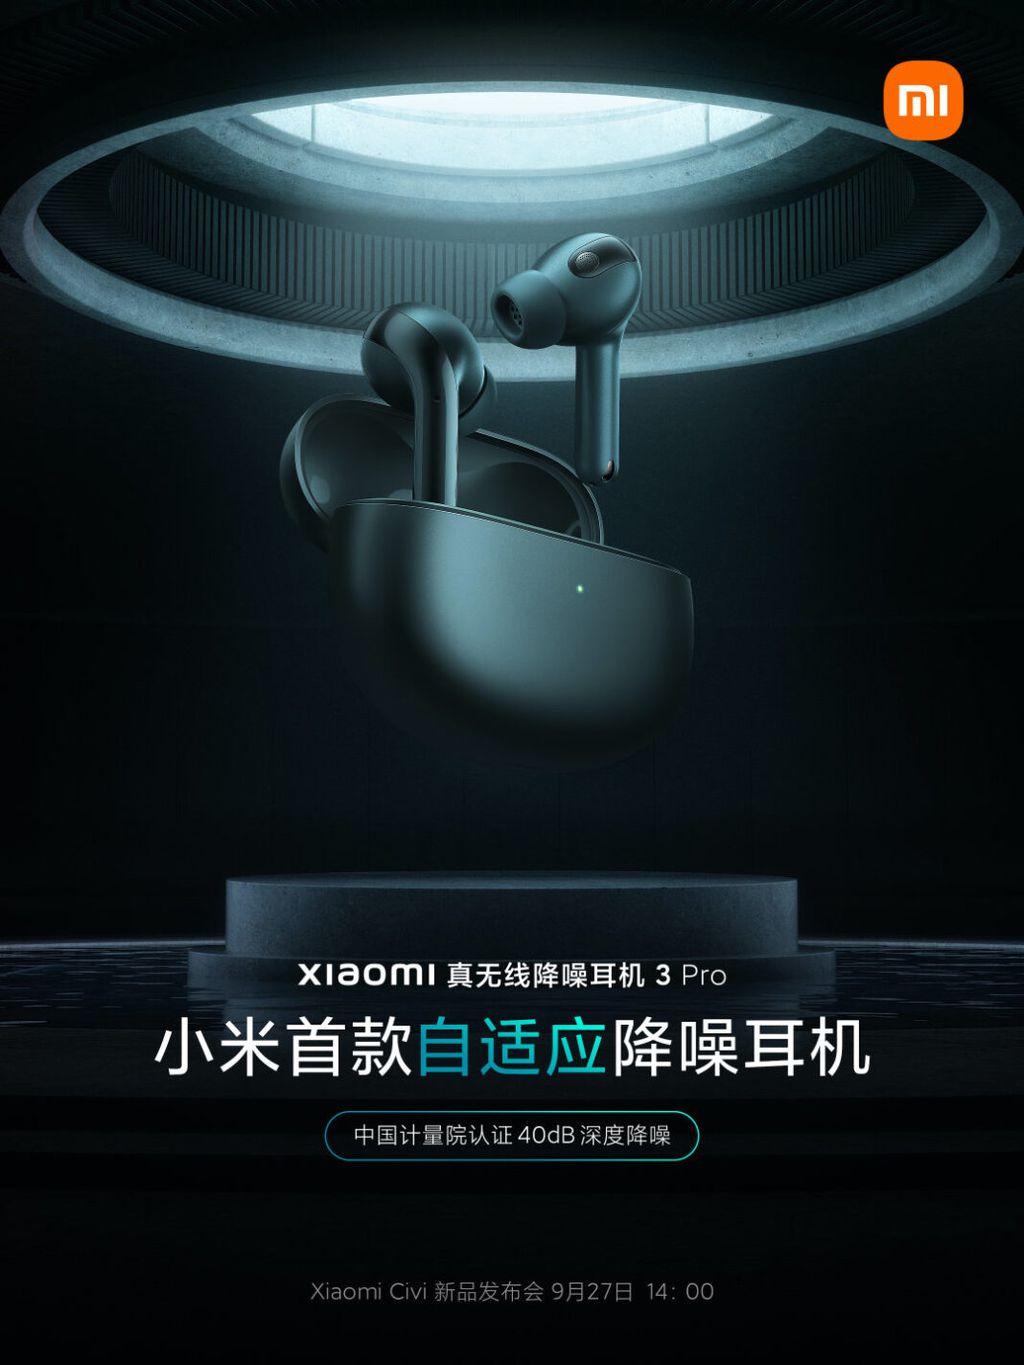 Fones trarão cancelamento adaptável de ruído (Imagem: Divulgação/Xiaomi)